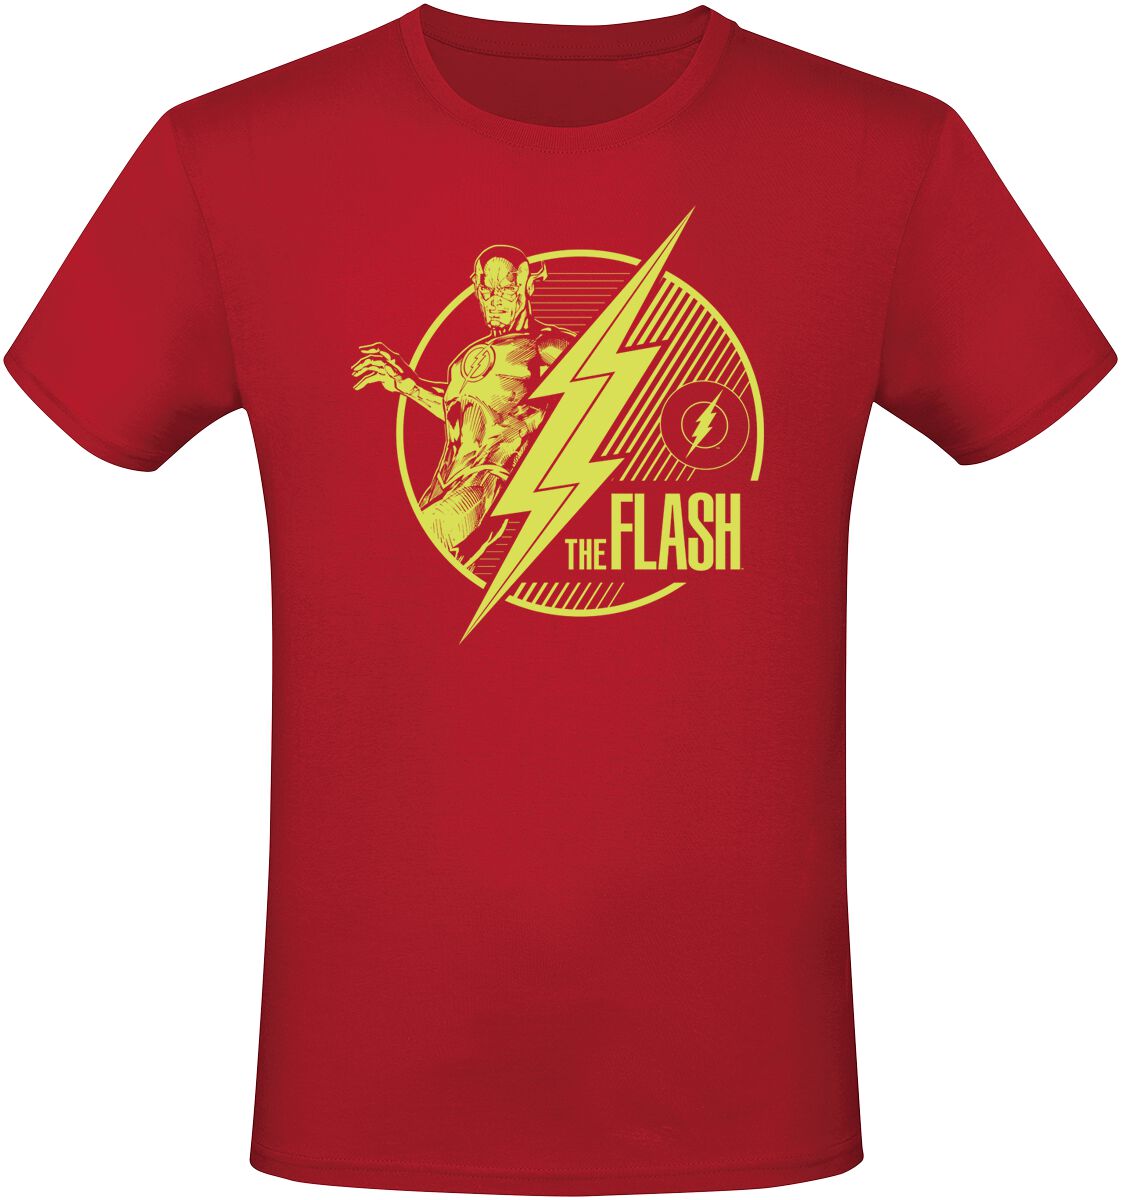 The Flash - DC Comics T-Shirt - Flash - S bis L - für Männer - Größe L - rot  - EMP exklusives Merchandise!